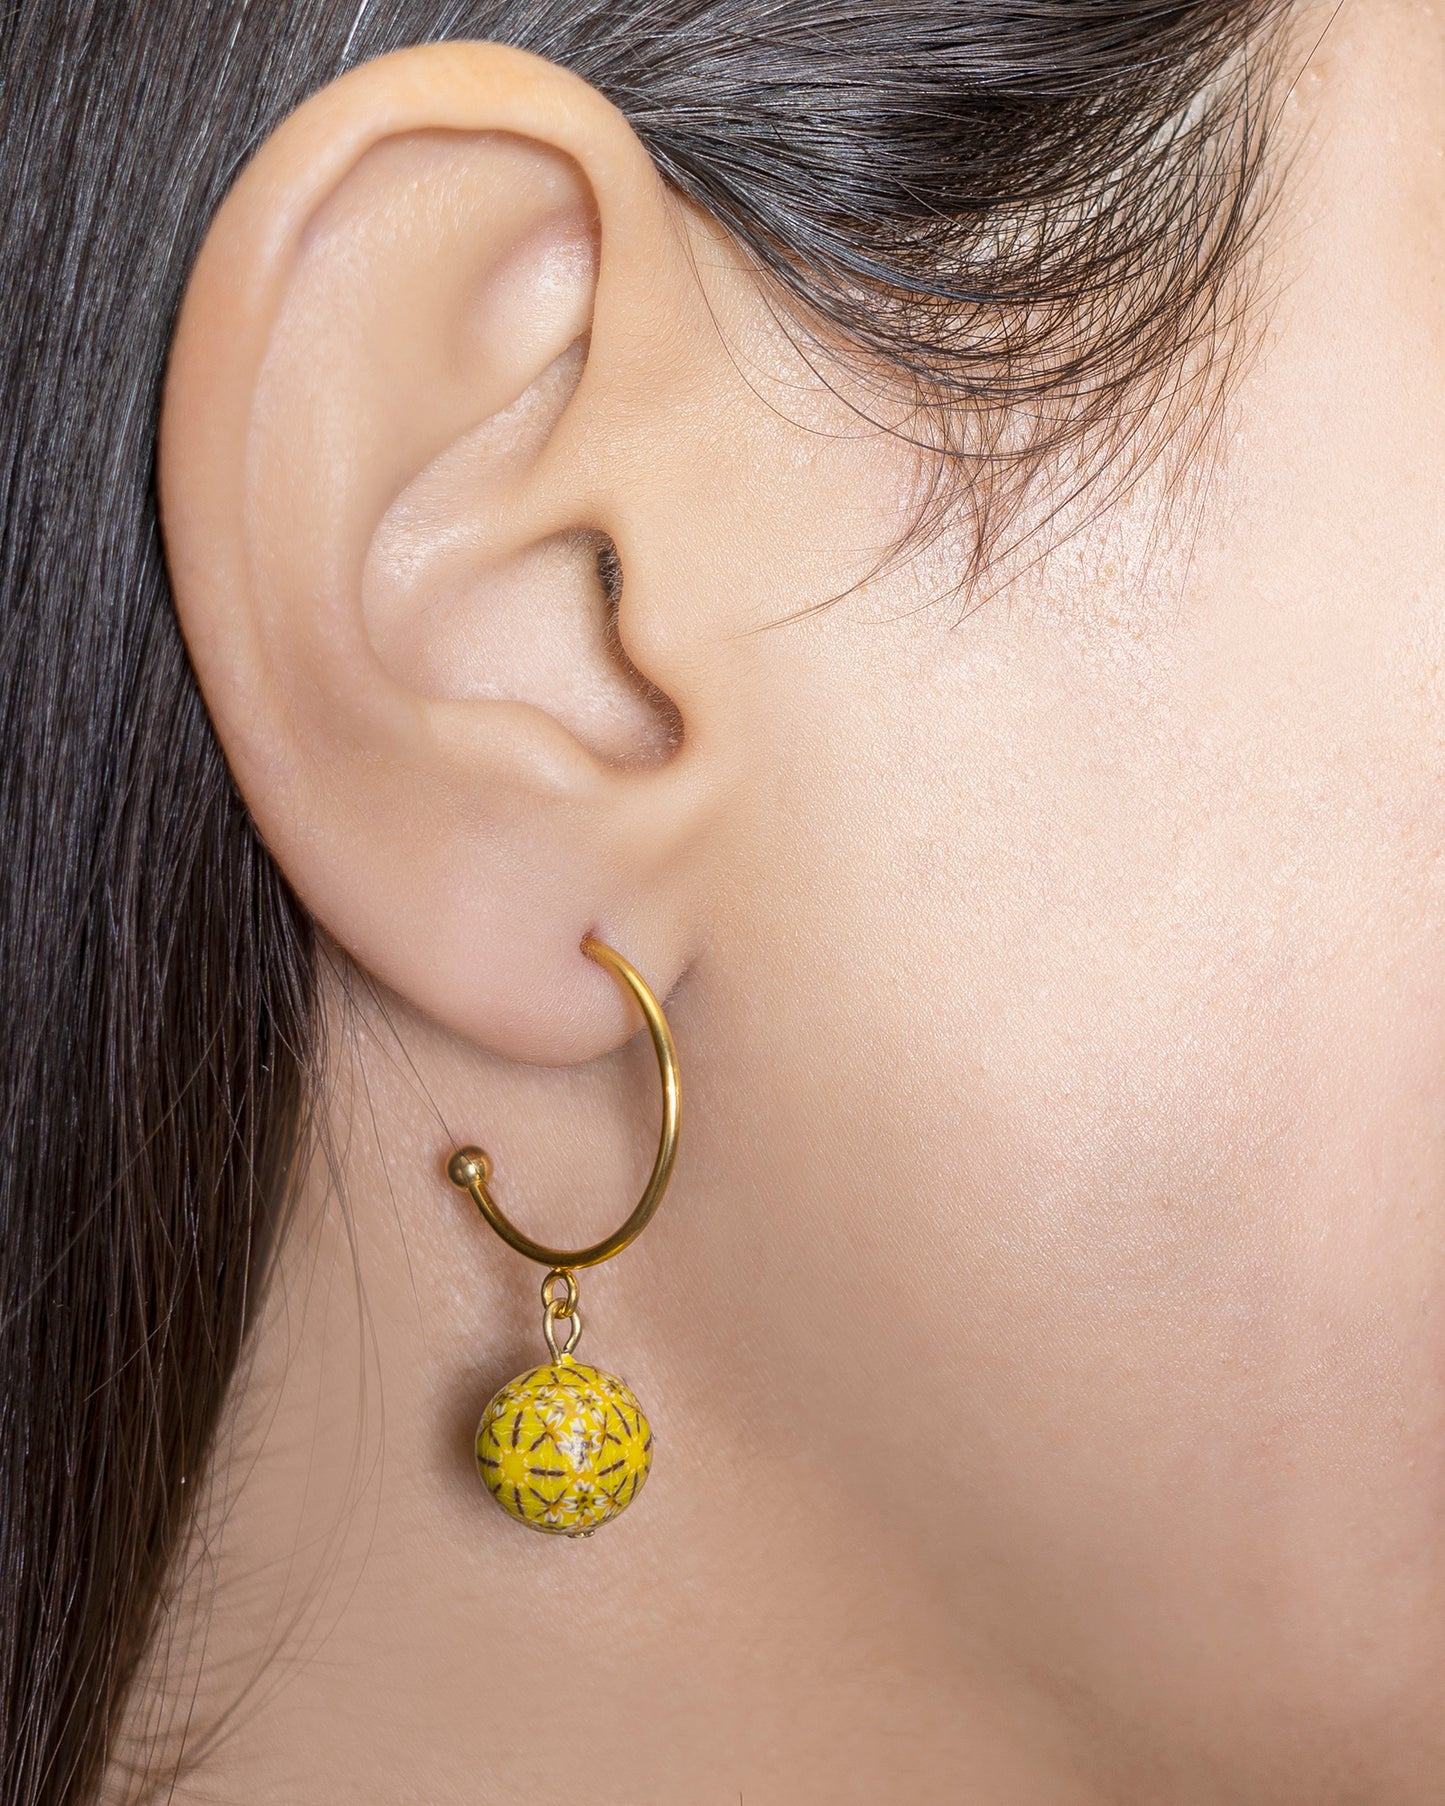 boucles d'oreilles pendantes fantaisies créoles avec une perle jaune suspendue 